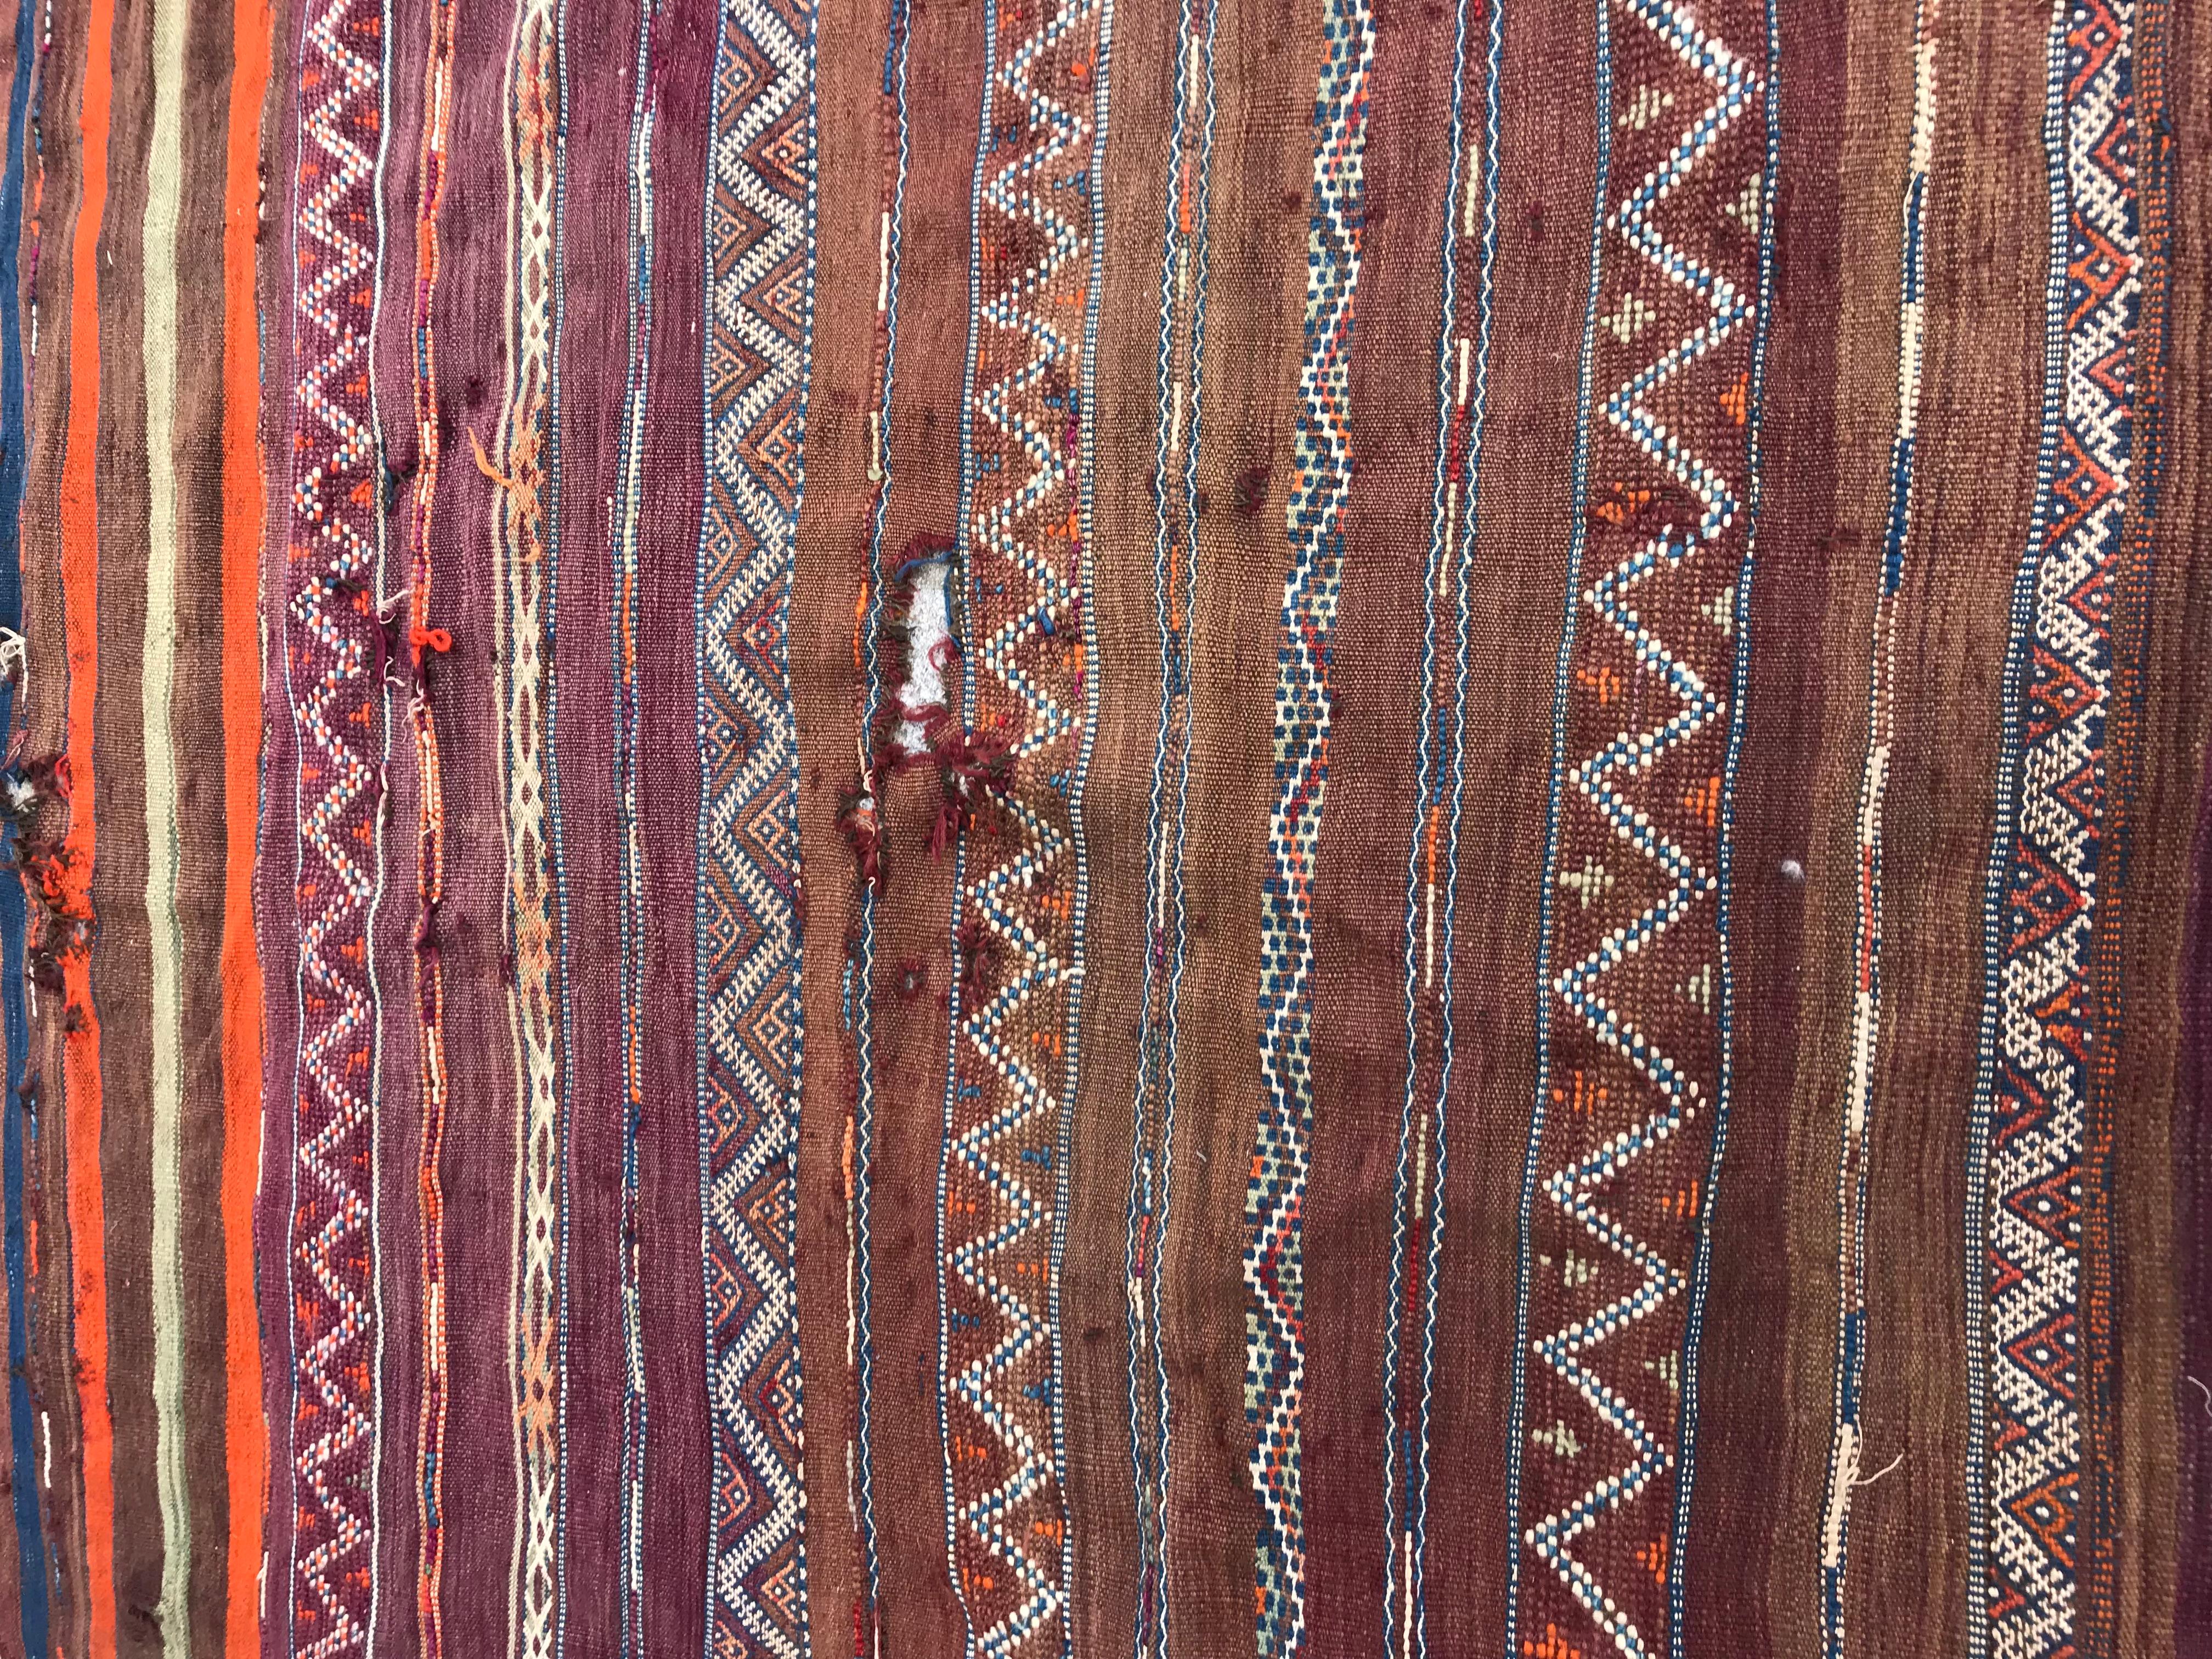 Frühe 20. Jahrhundert Stammes-marokkanischen Kilim mit Stammes-und geometrischen Design und schöne Farben mit lila, orange, braun, blau und grün, komplett handgewebt mit Wolle auf Wolle Grundlage.